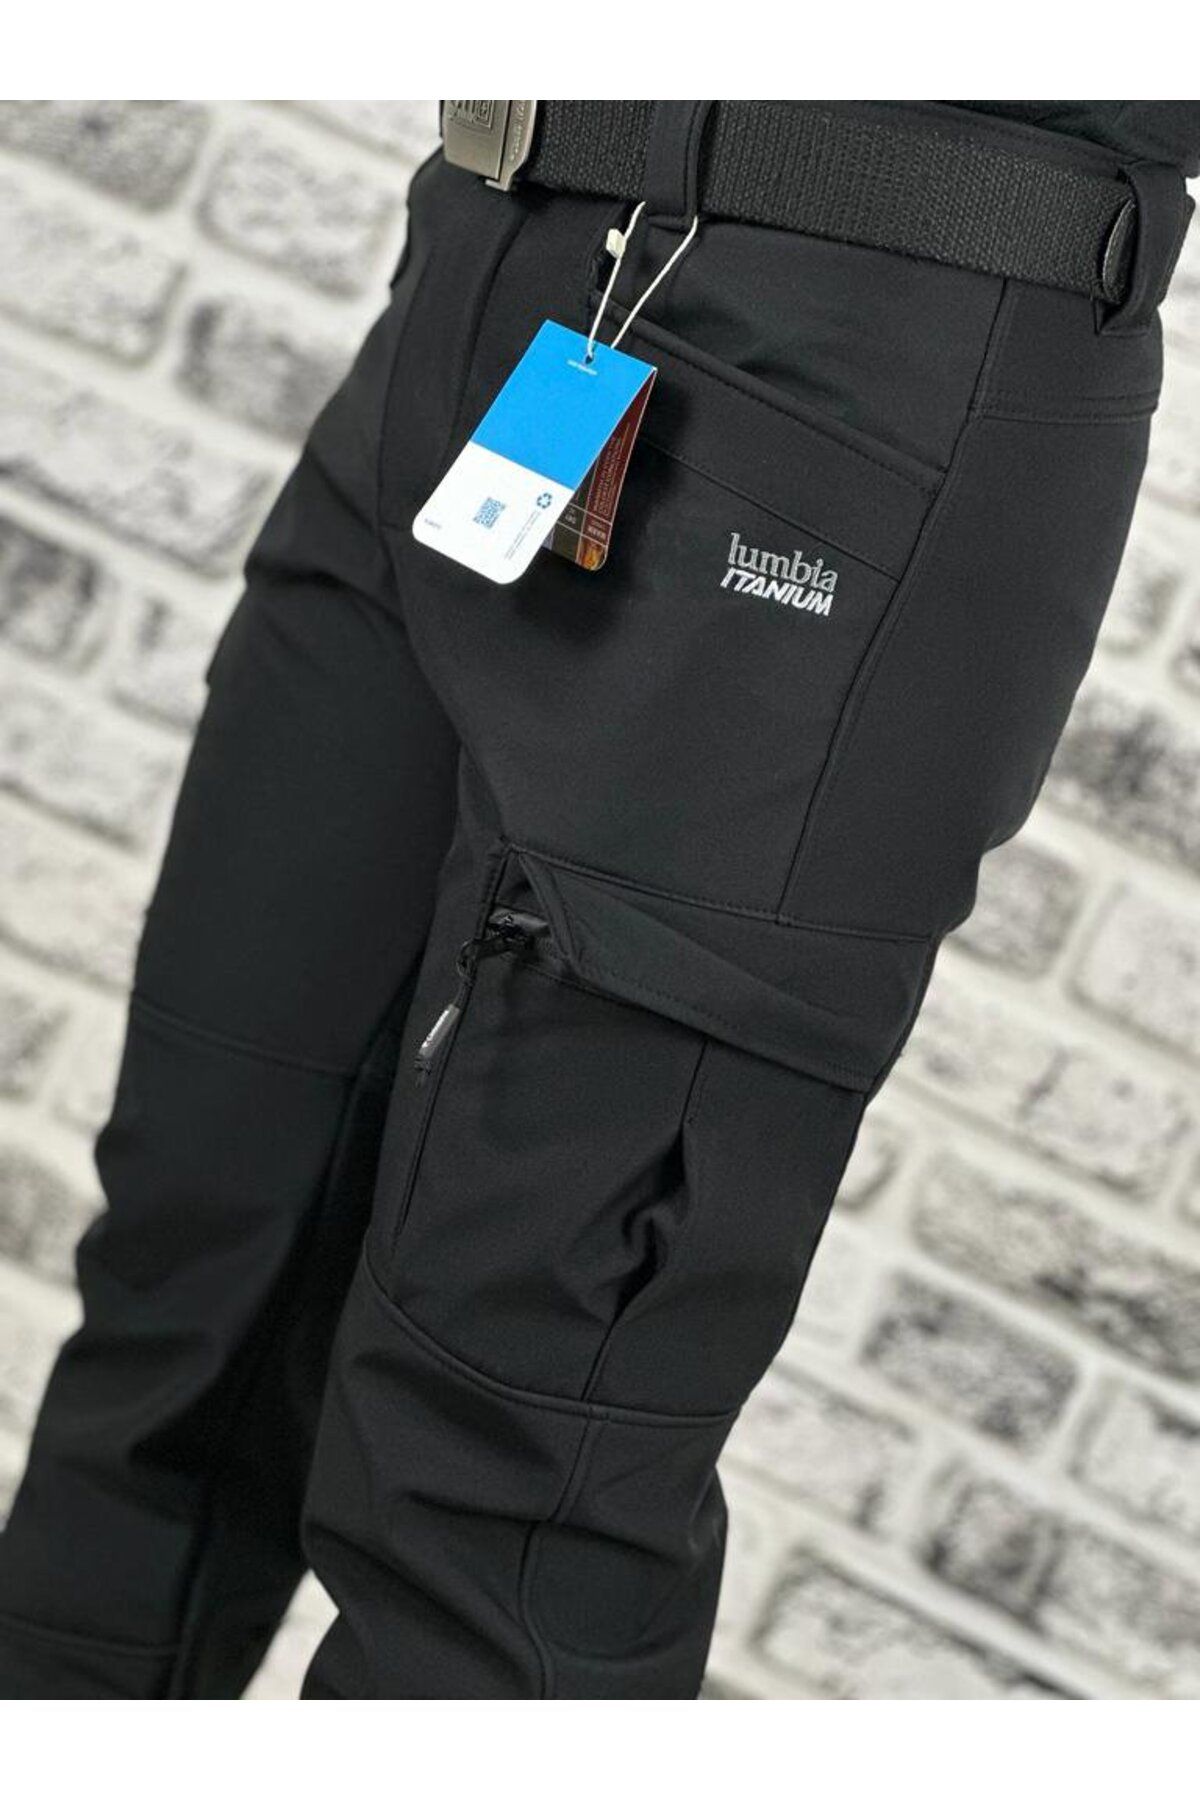 Mikro Taktical kargocep cargocep içi polarlı kışlık softjel sıvı itici 5 cepli outdoor pantolon